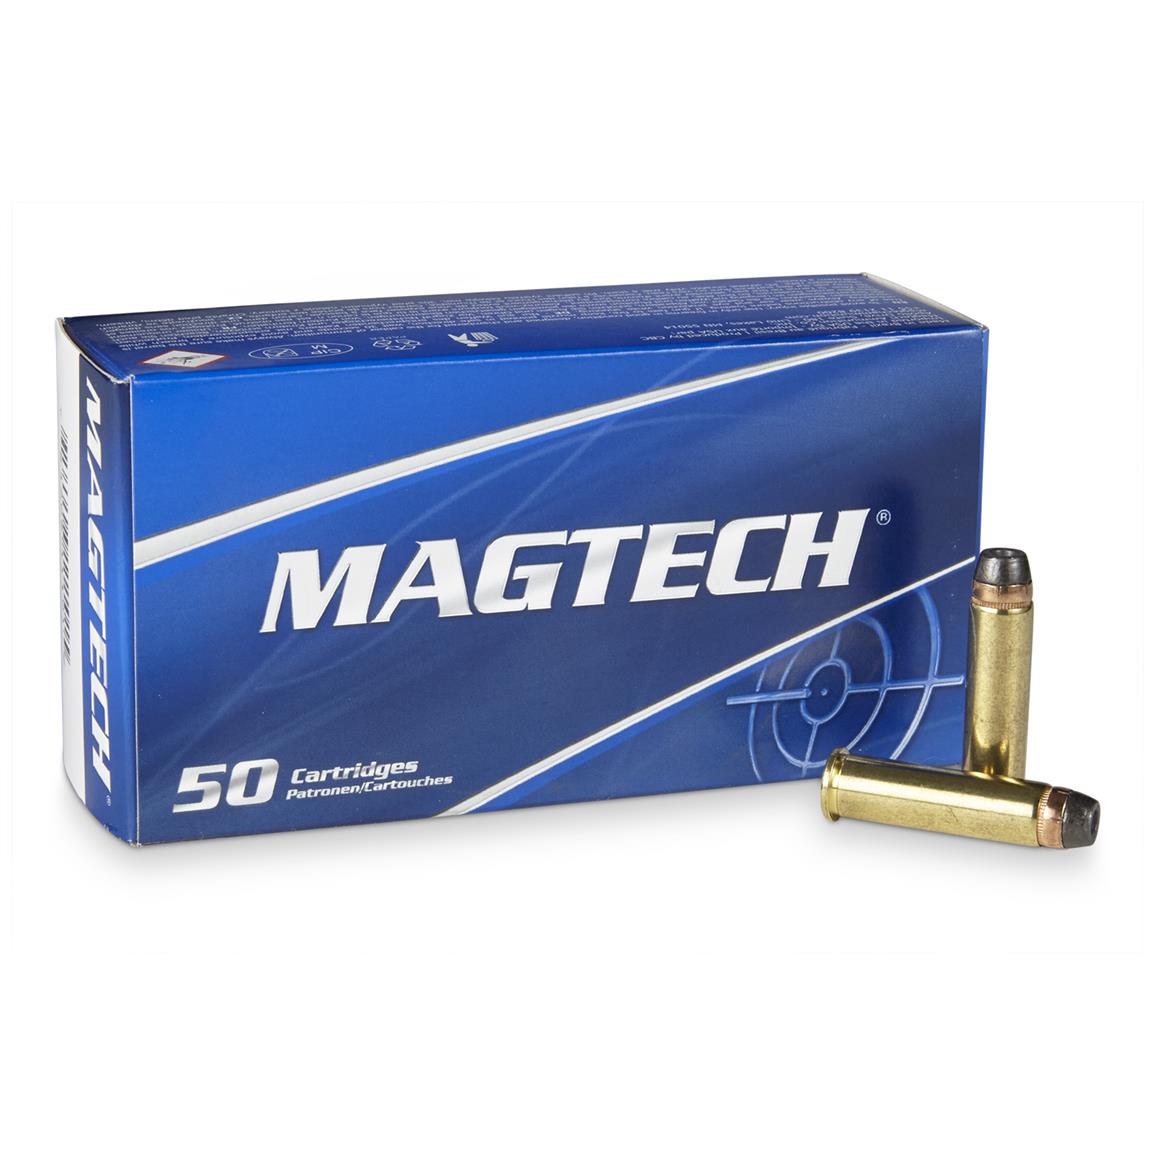 Magtech, .357 Magnum, SJHP, 158 Grain, 50 Rounds